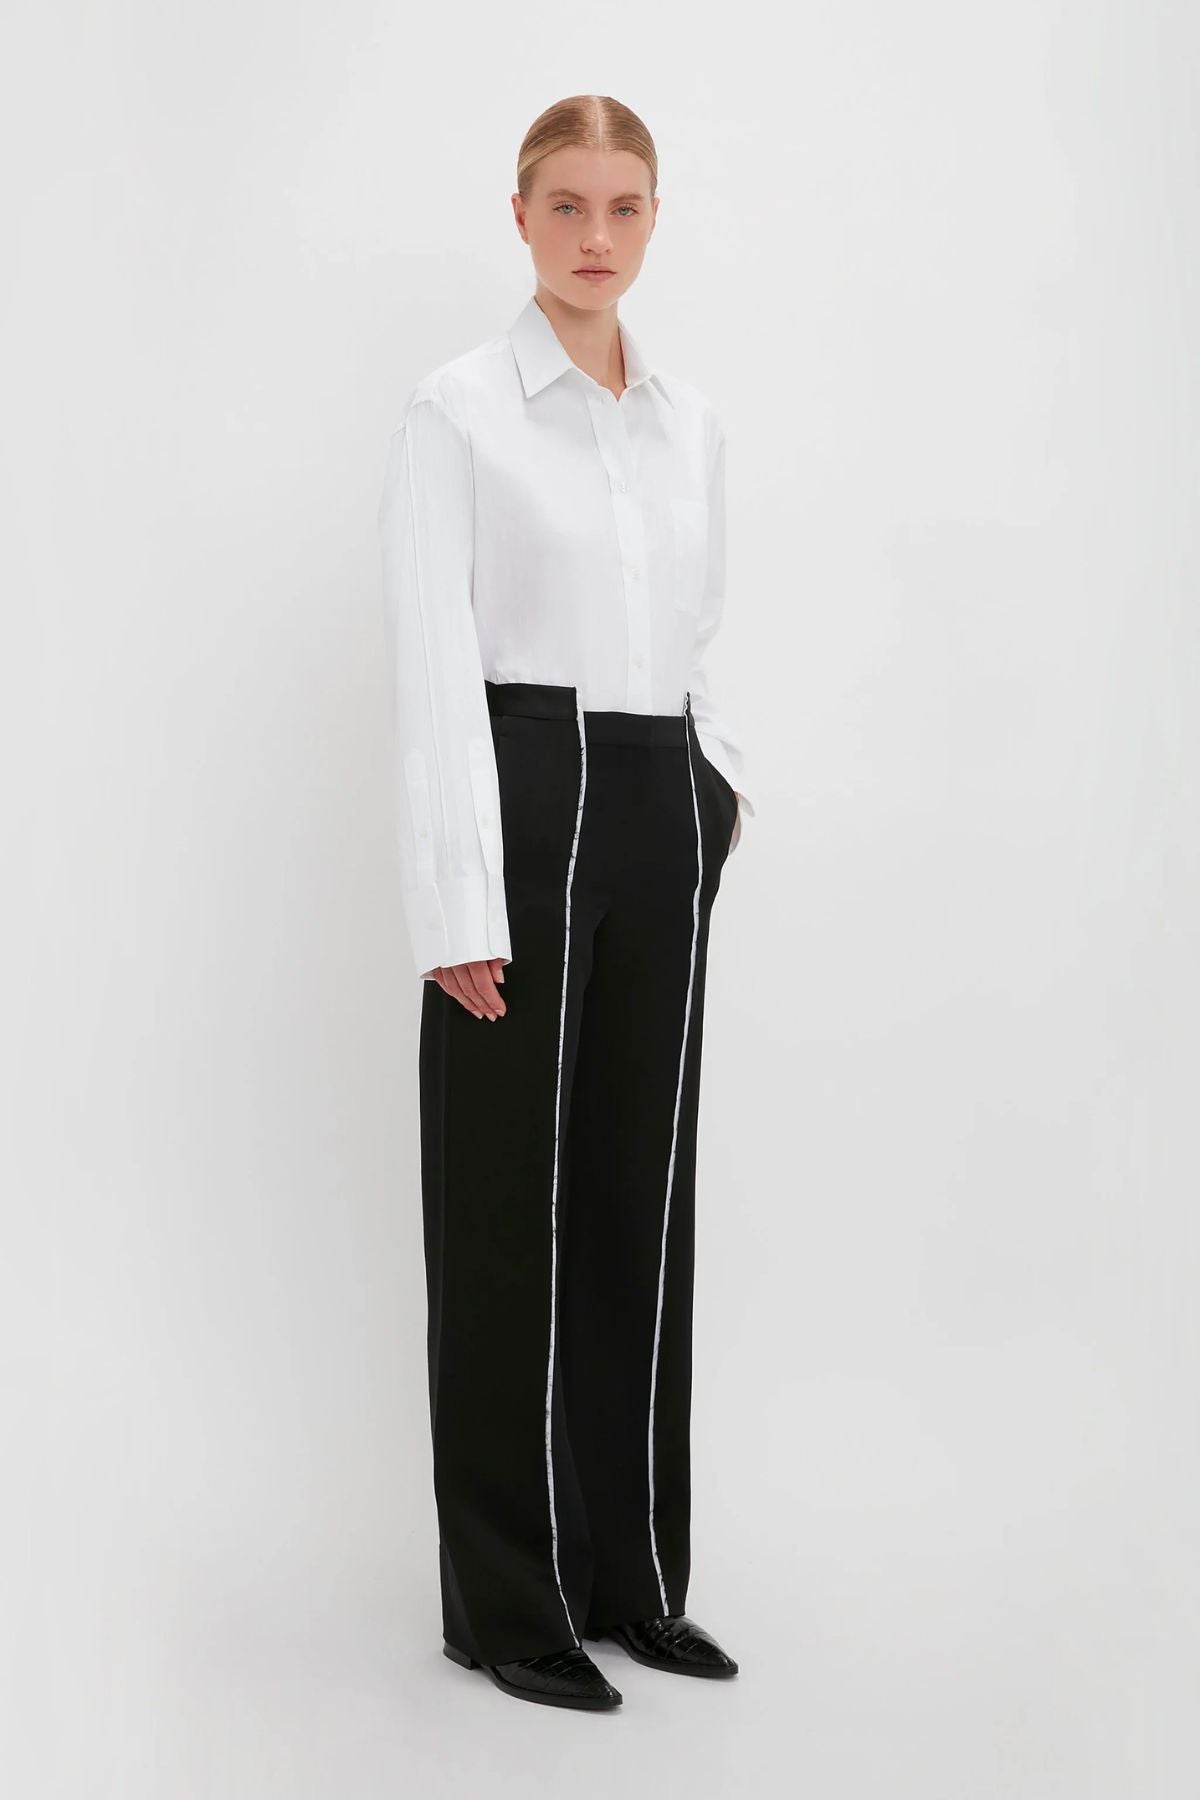 Victoria Beckham Cuff Detail Oversized Shirt - White